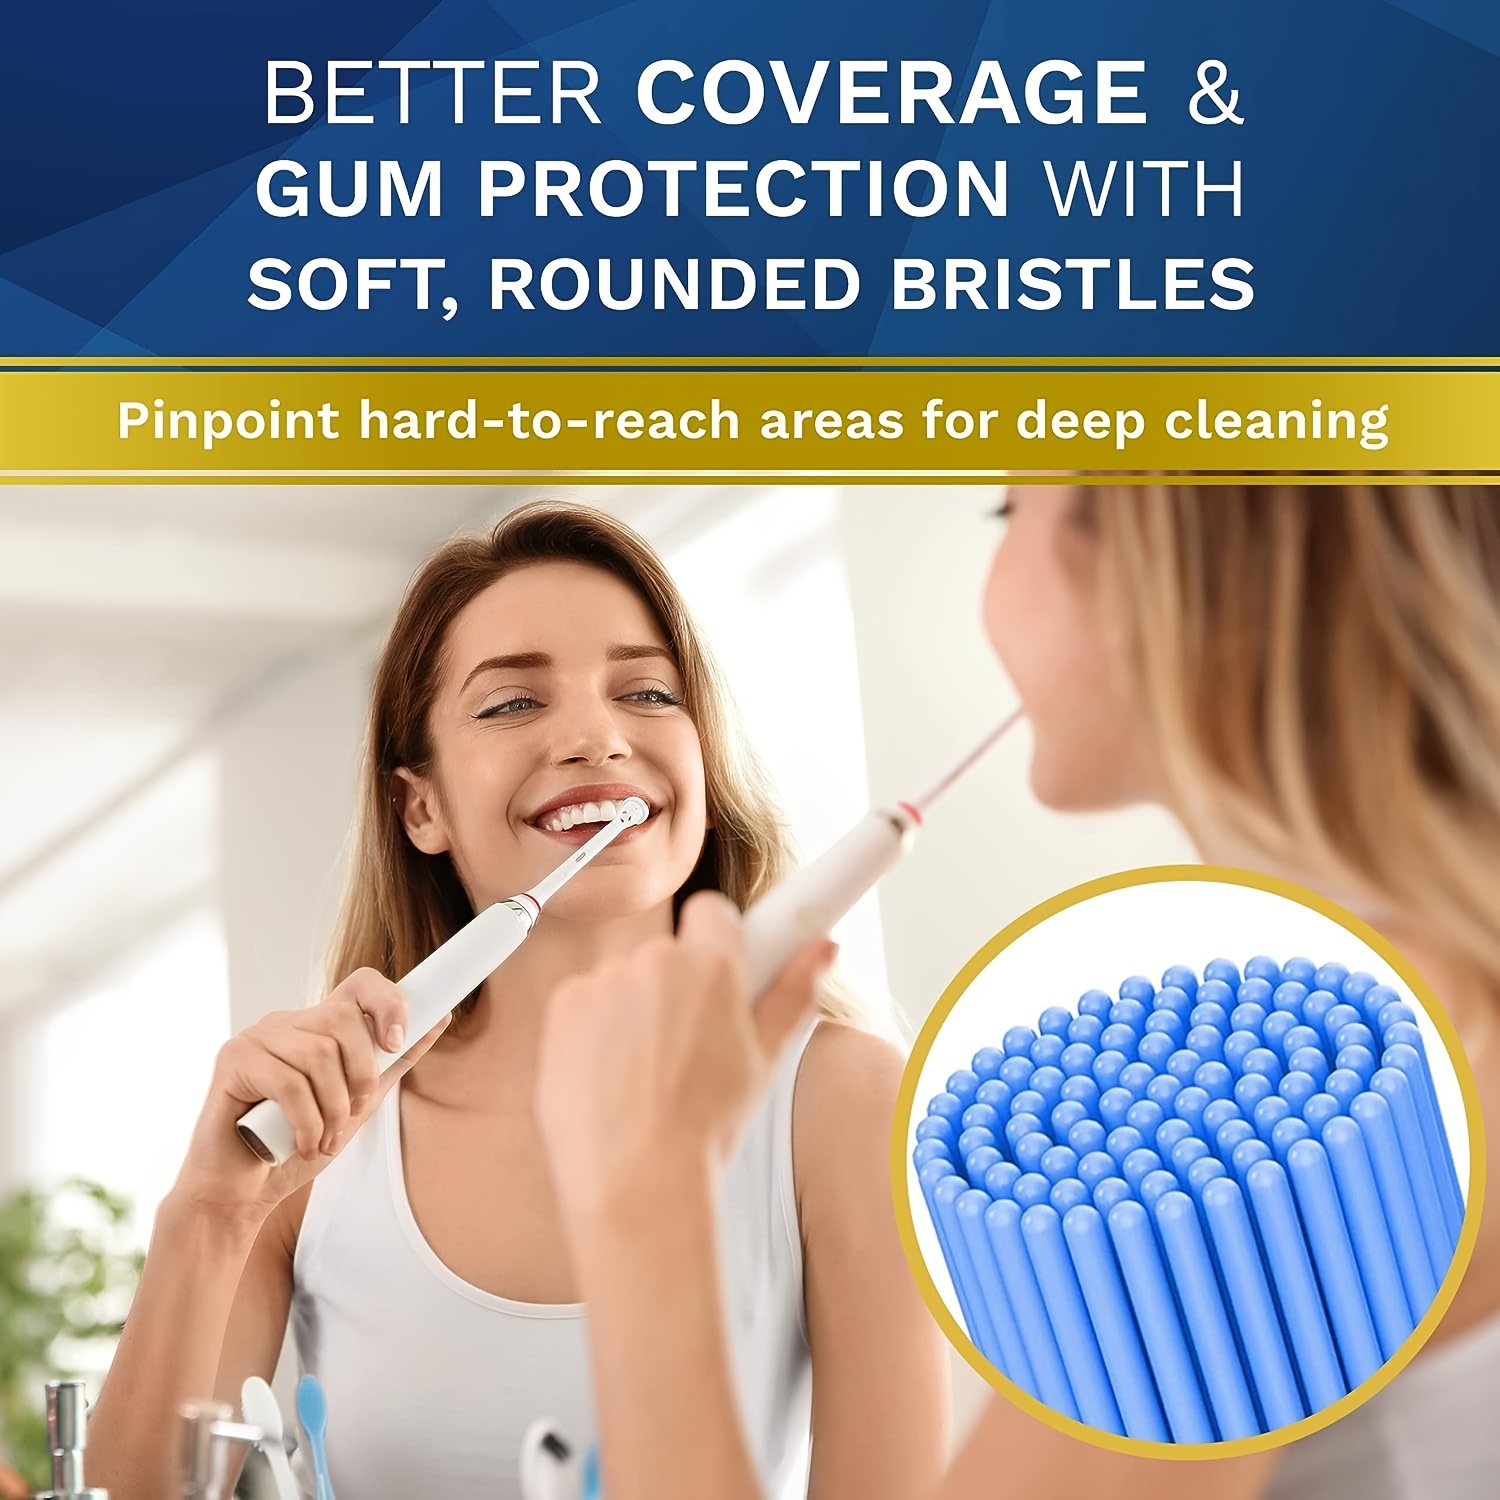 Paquete de 8 cabezales de cepillo de repuesto para el cuidado de las encías  sensibles compatibles con el cepillo de dientes eléctrico Oral b Braun.